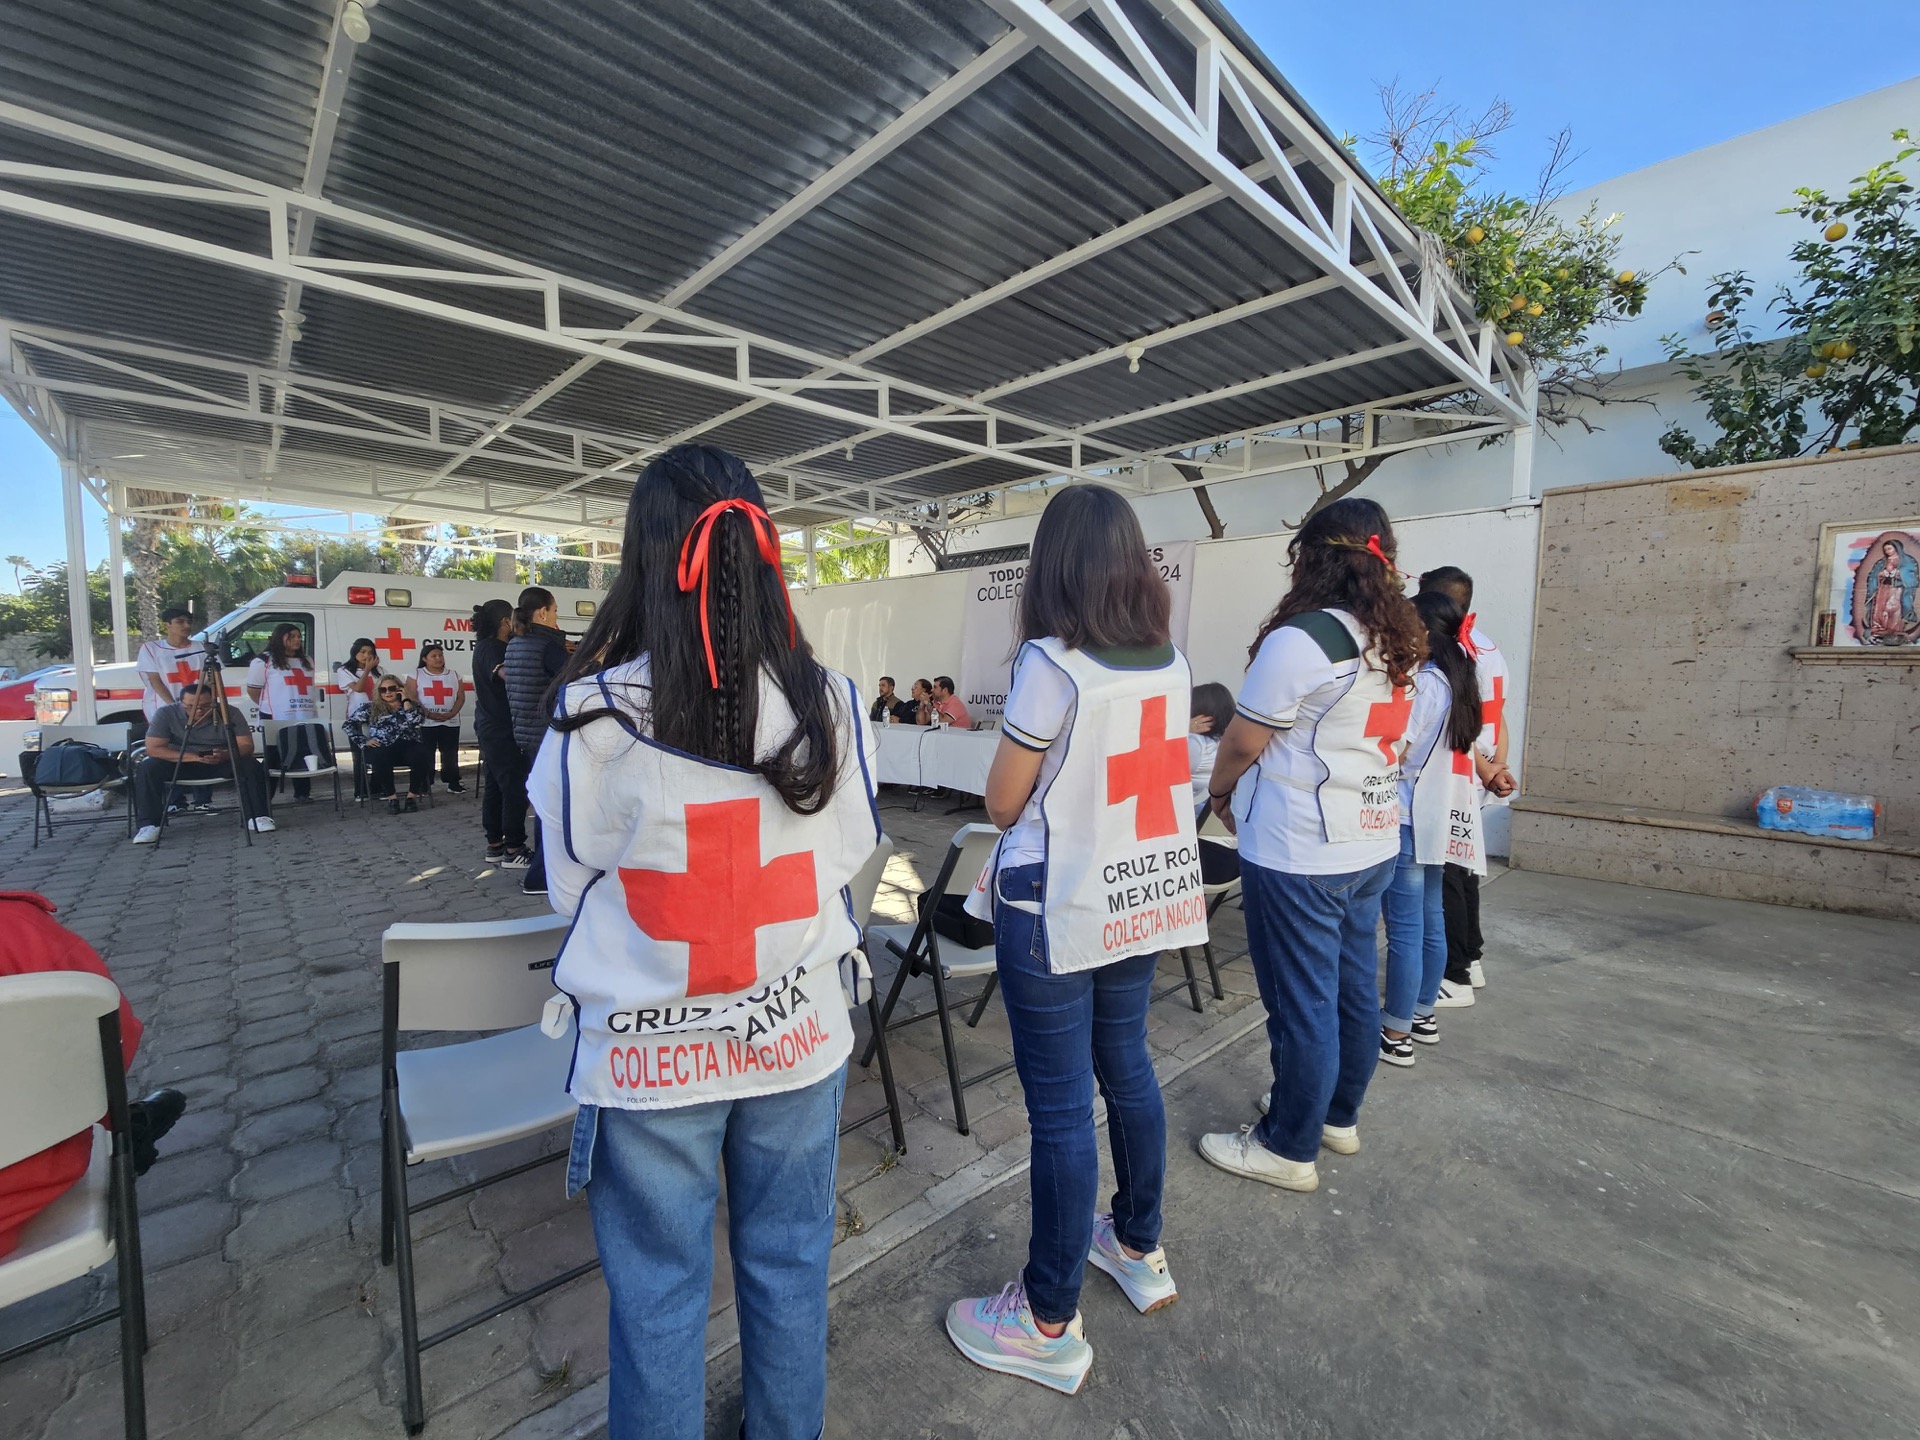 Arranca Colecta Anual de Cruz Roja Mexicana en Los Cabos; recaudar 3 mdp para compra de ambulancias, la meta